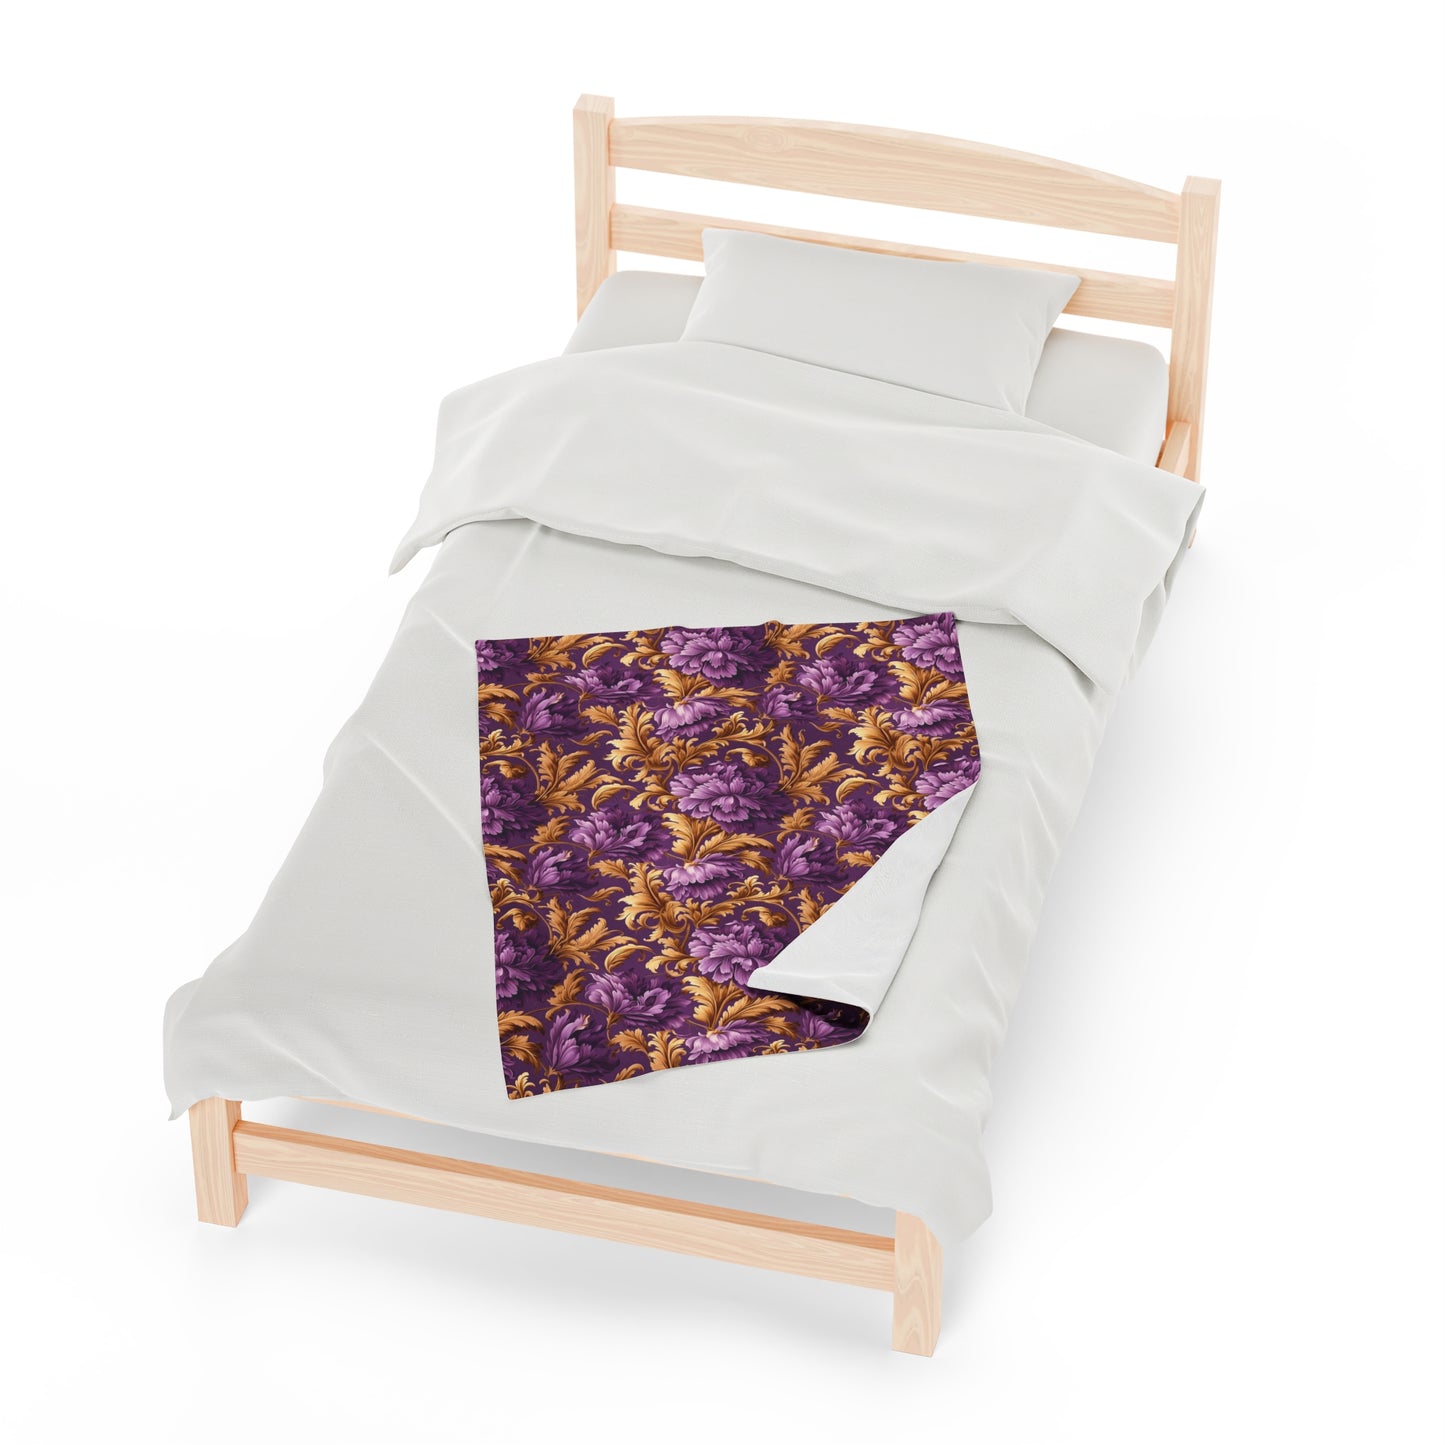 Velveteen Plush Blanket | Gold and Purple Flowers | Sophisticated Throw Blanket